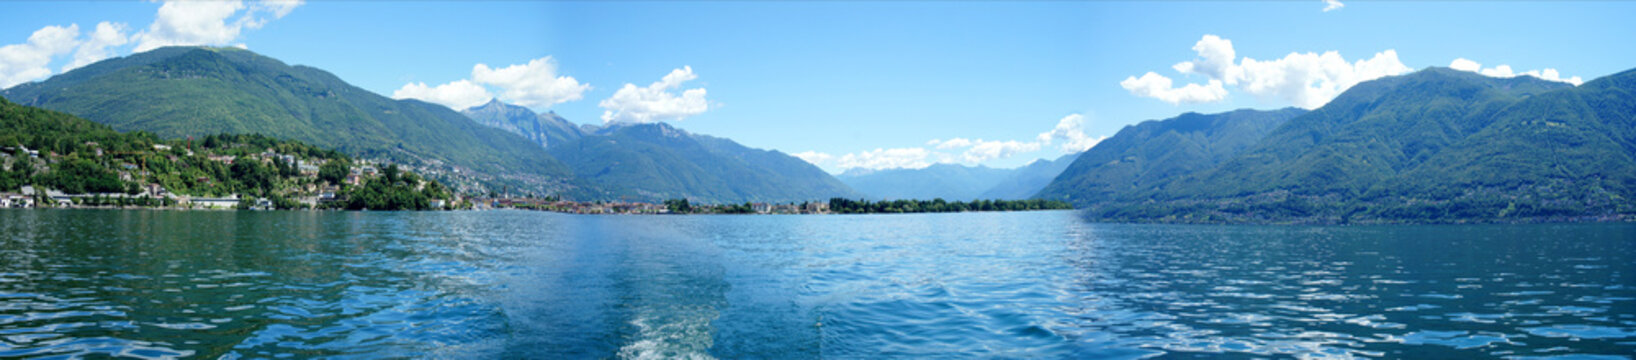 Panorama Lago Maggiore im Tessin, Schweiz